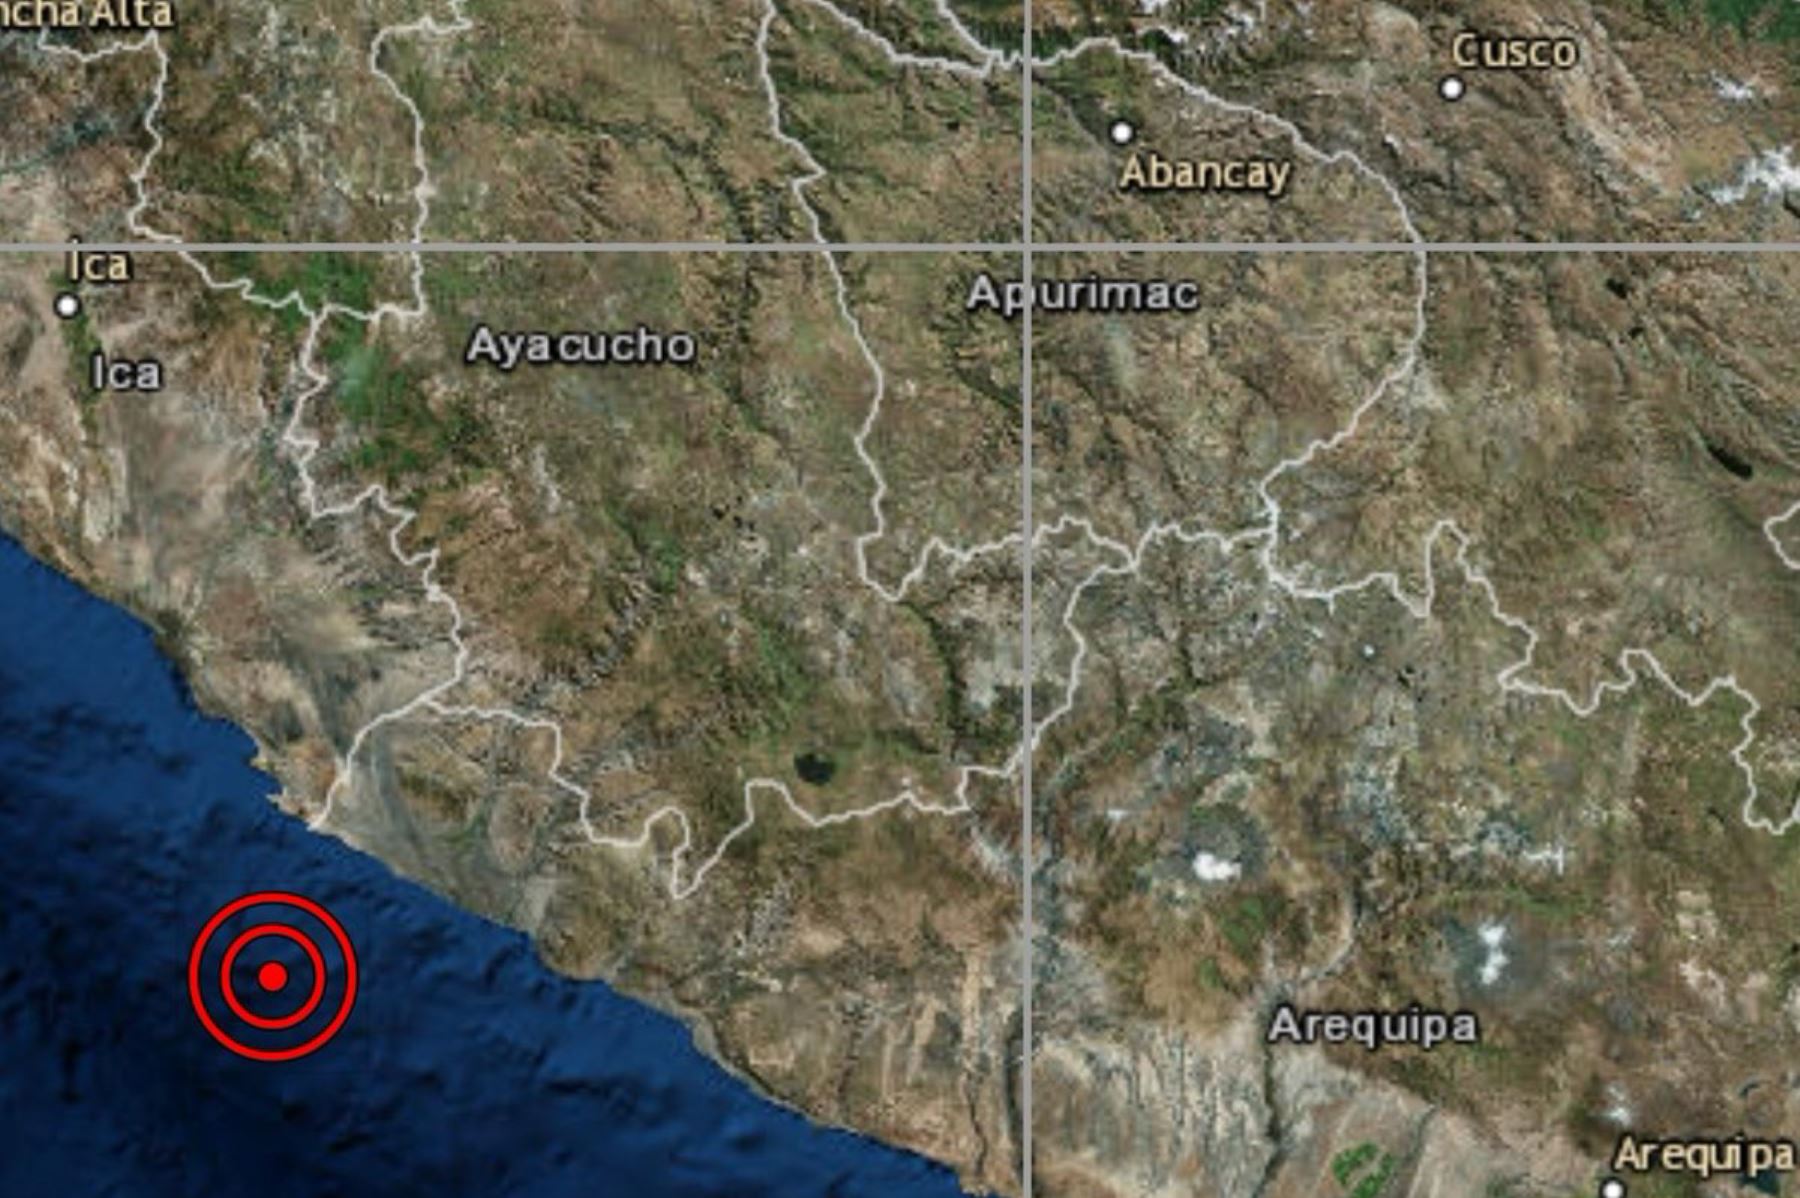 A las 16:48 horas se registró un movimiento telúrico de magnitud 4.2 en la provincia arequipeña de Arequipa.